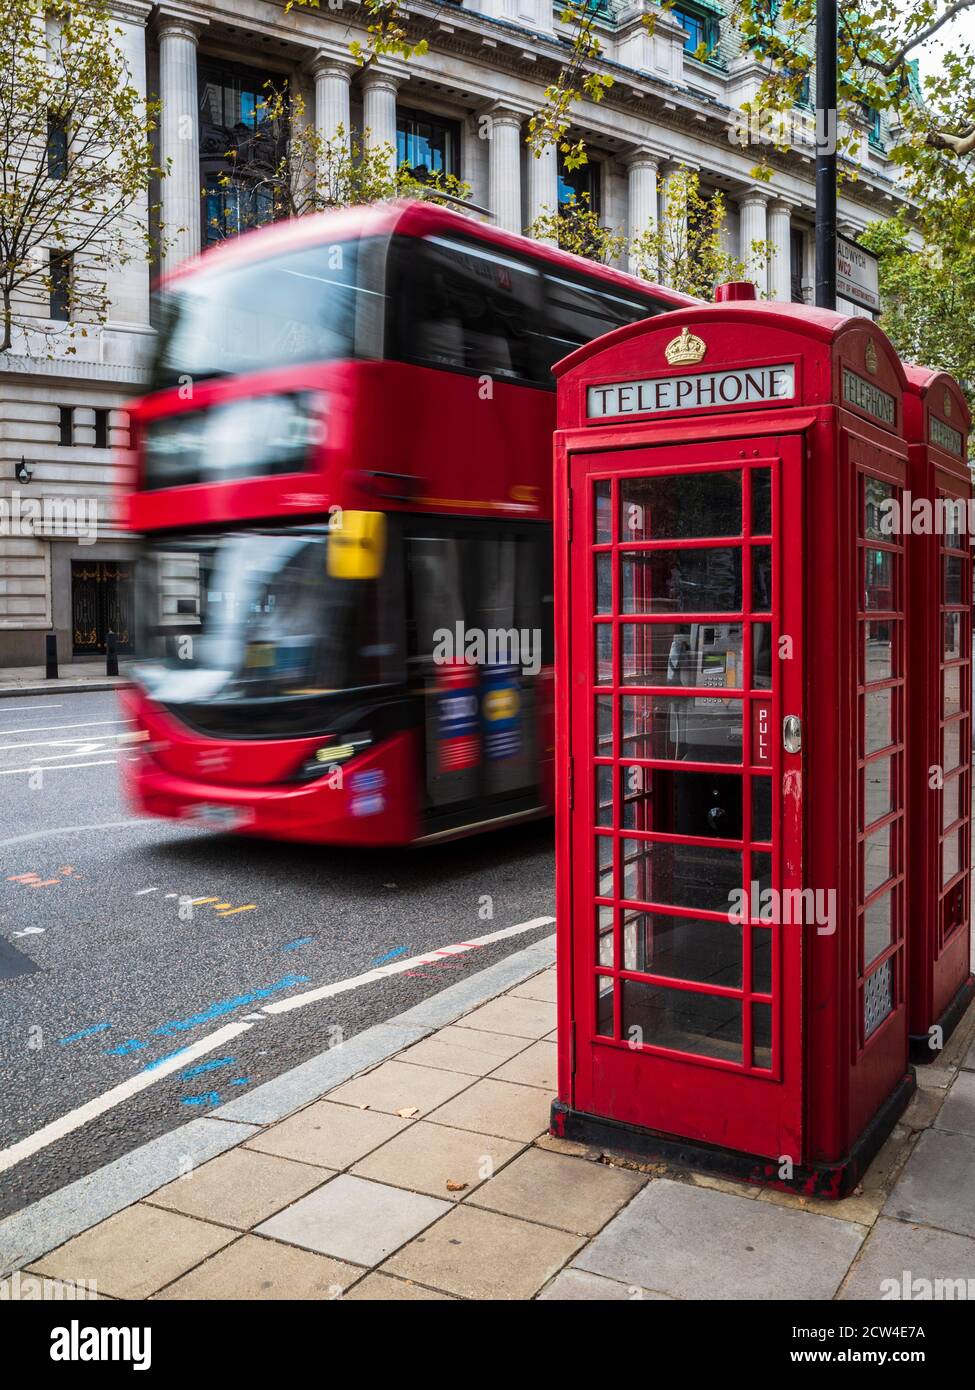 Emblématique Londres - un bus rouge passe devant deux téléphones rouges traditionnels dans le centre de Londres. Mouvement flou du mouvement du bus. Tourisme de Londres. Banque D'Images